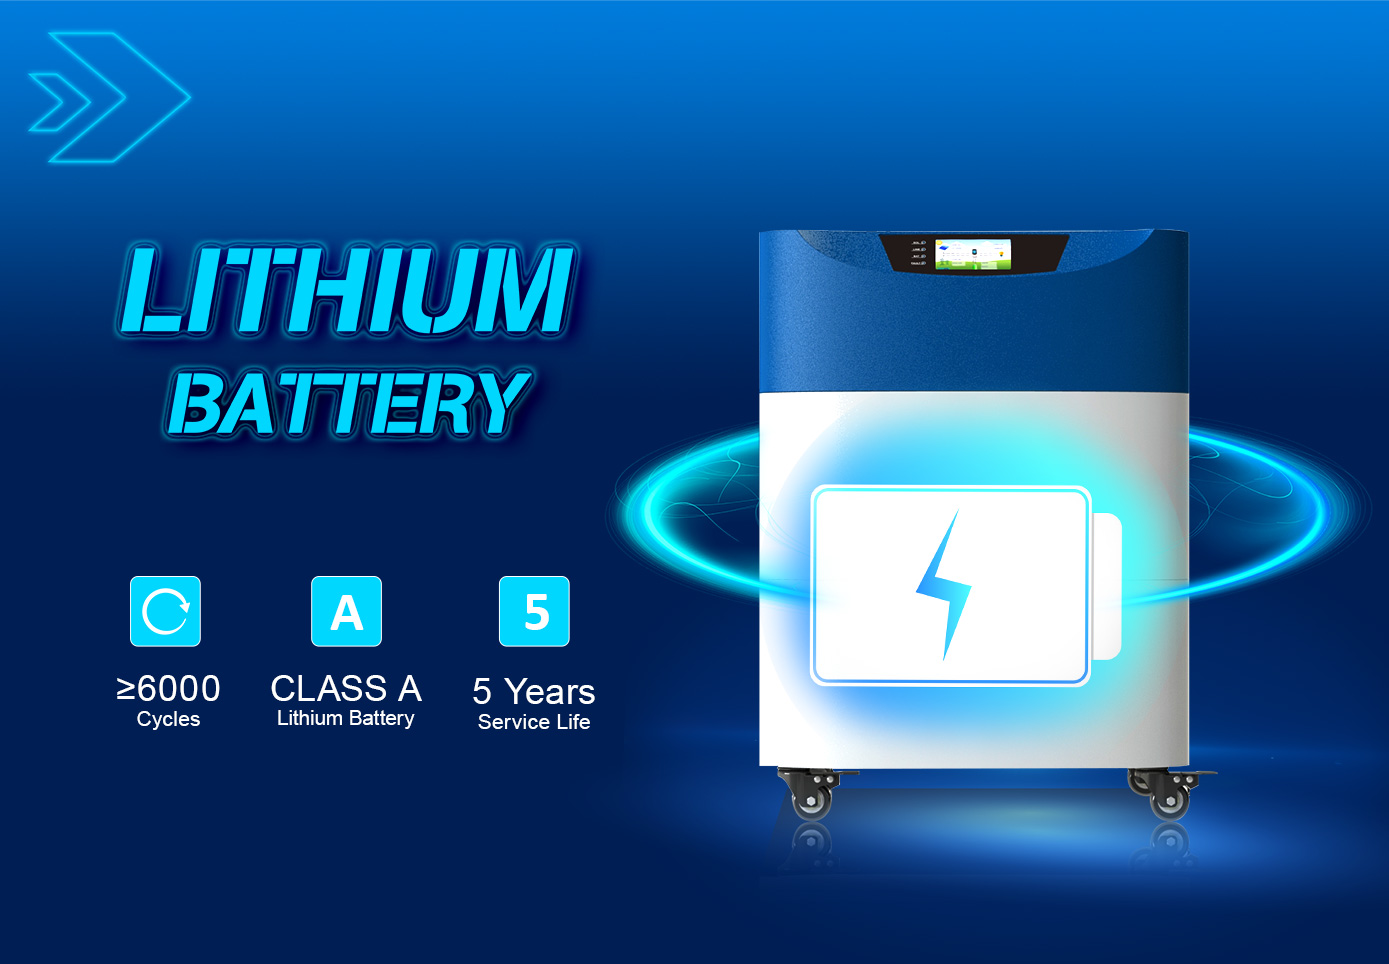 Batería de litio incorporada de 6000 ciclos nueva y tiene una vida útil de 5 años.